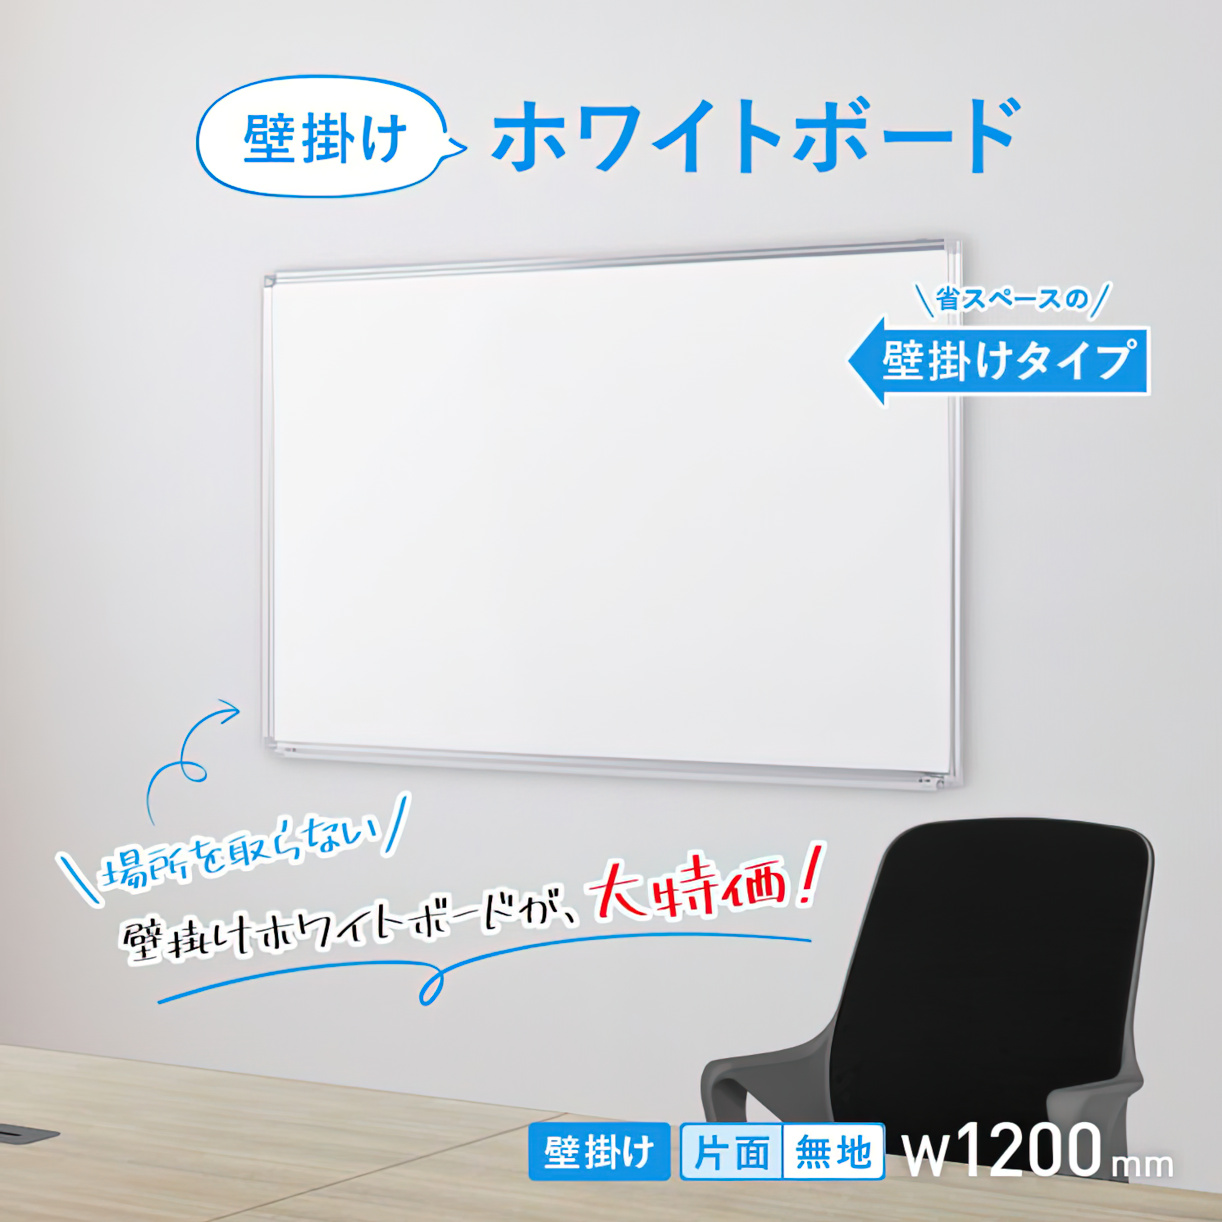 最新な 無地 壁掛け ホワイトボード W1200×H900 マグネット イレイサー付き 粉受け付き 掲示板 スチール 学校 オフィス家具 